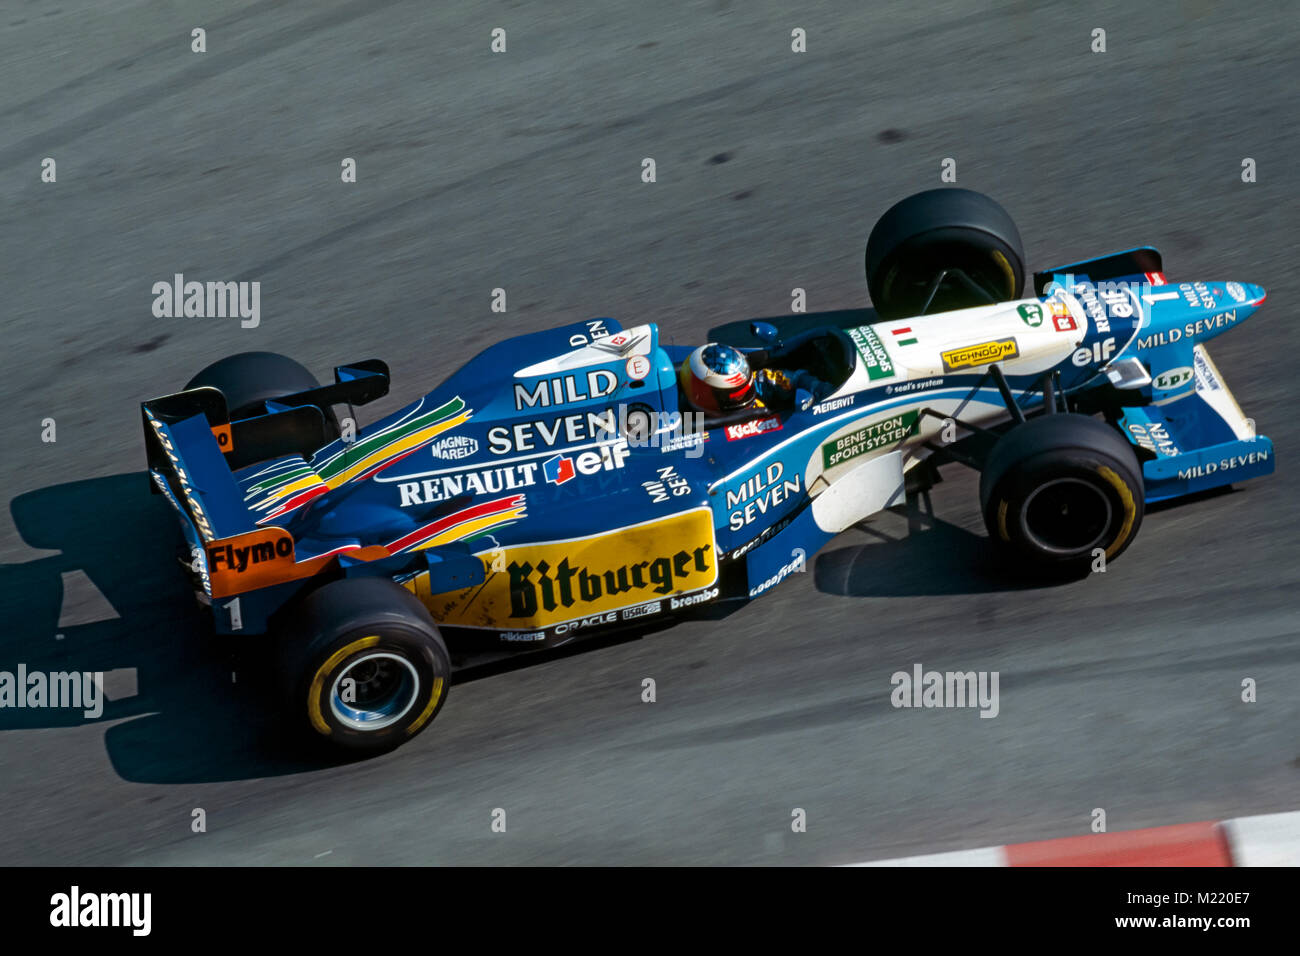 F1, Johny Herbet, Benetton Renault, GP Monaco 1995 Stock Photo - Alamy